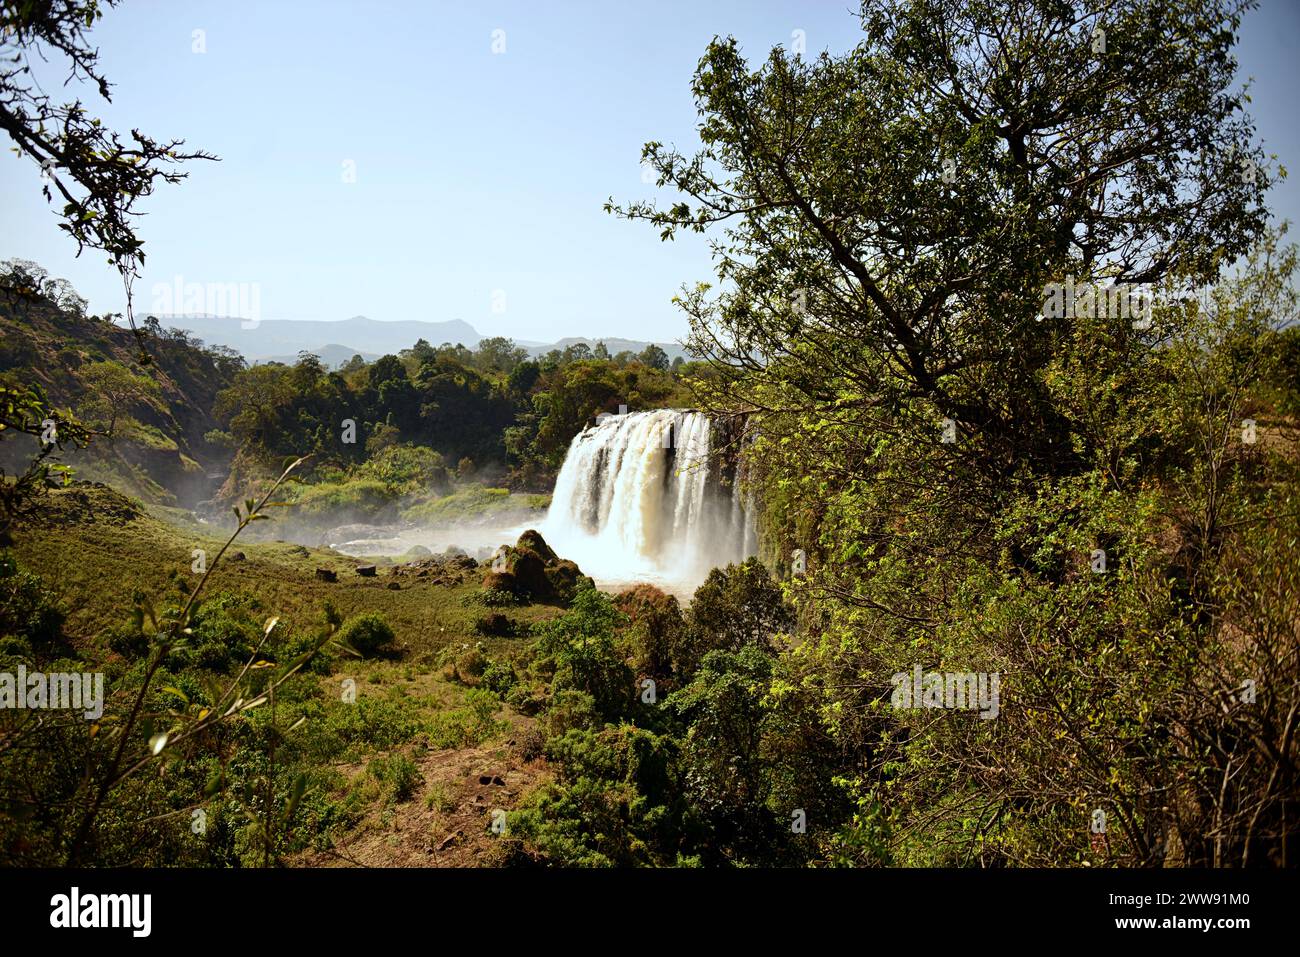 Le Blue Nile Falls sono cascate situate in Etiopia. Conosciuti come Tis Issat o Tissisat in amarico, si trovano nella prima parte del fiume, ab Foto Stock